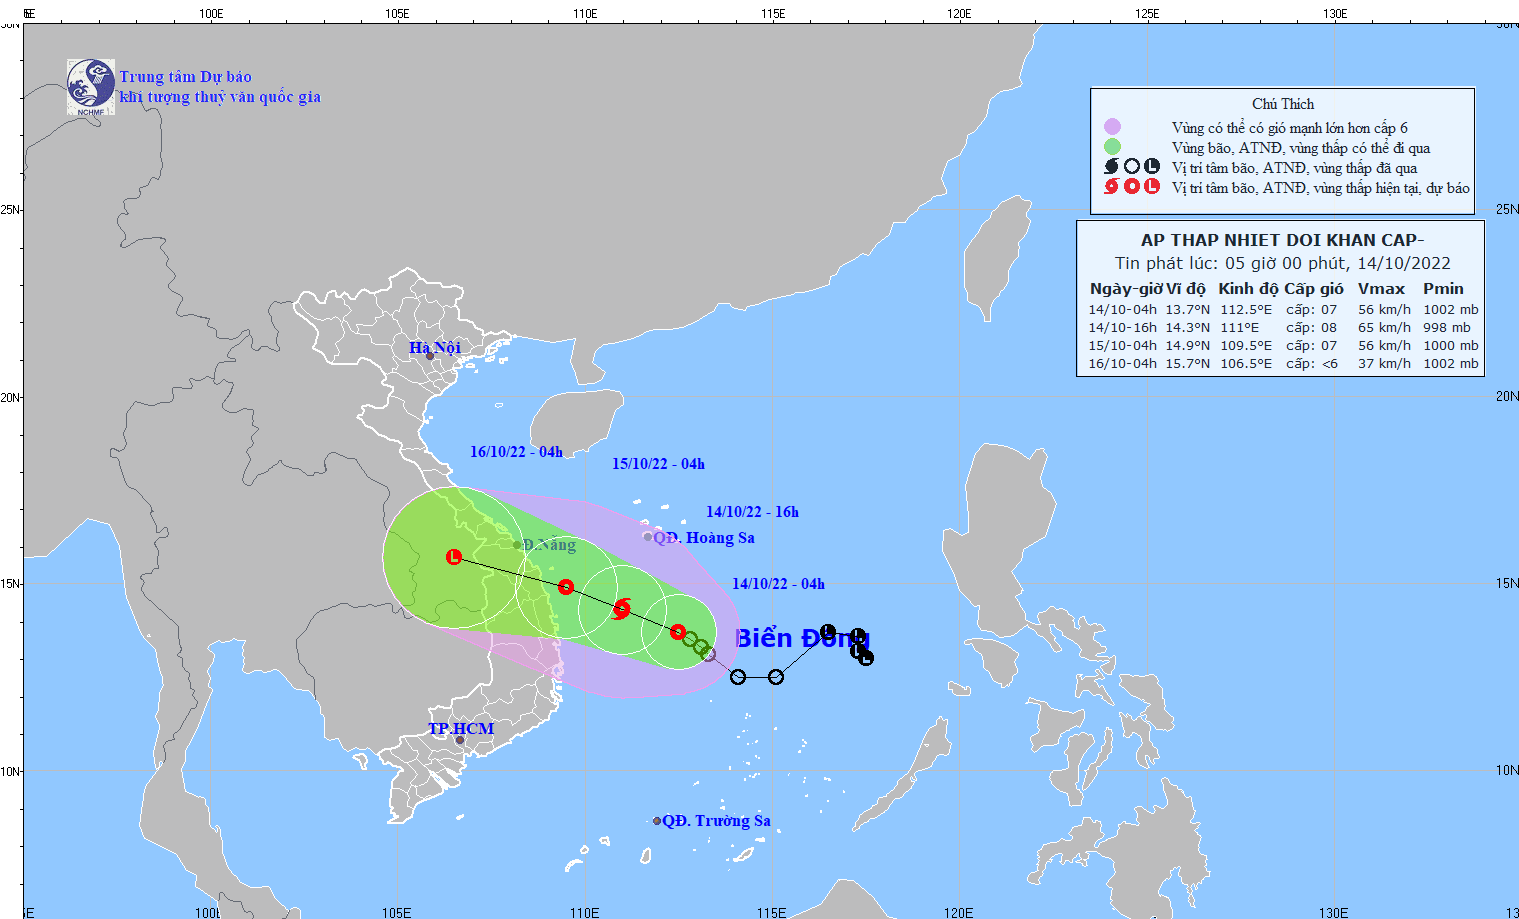 Ảnh hưởng của áp thấp, vùng biển từ Quảng Trị đến Phú Yên gió giật cấp 10; mưa lớn ở Trung Trung Bộ